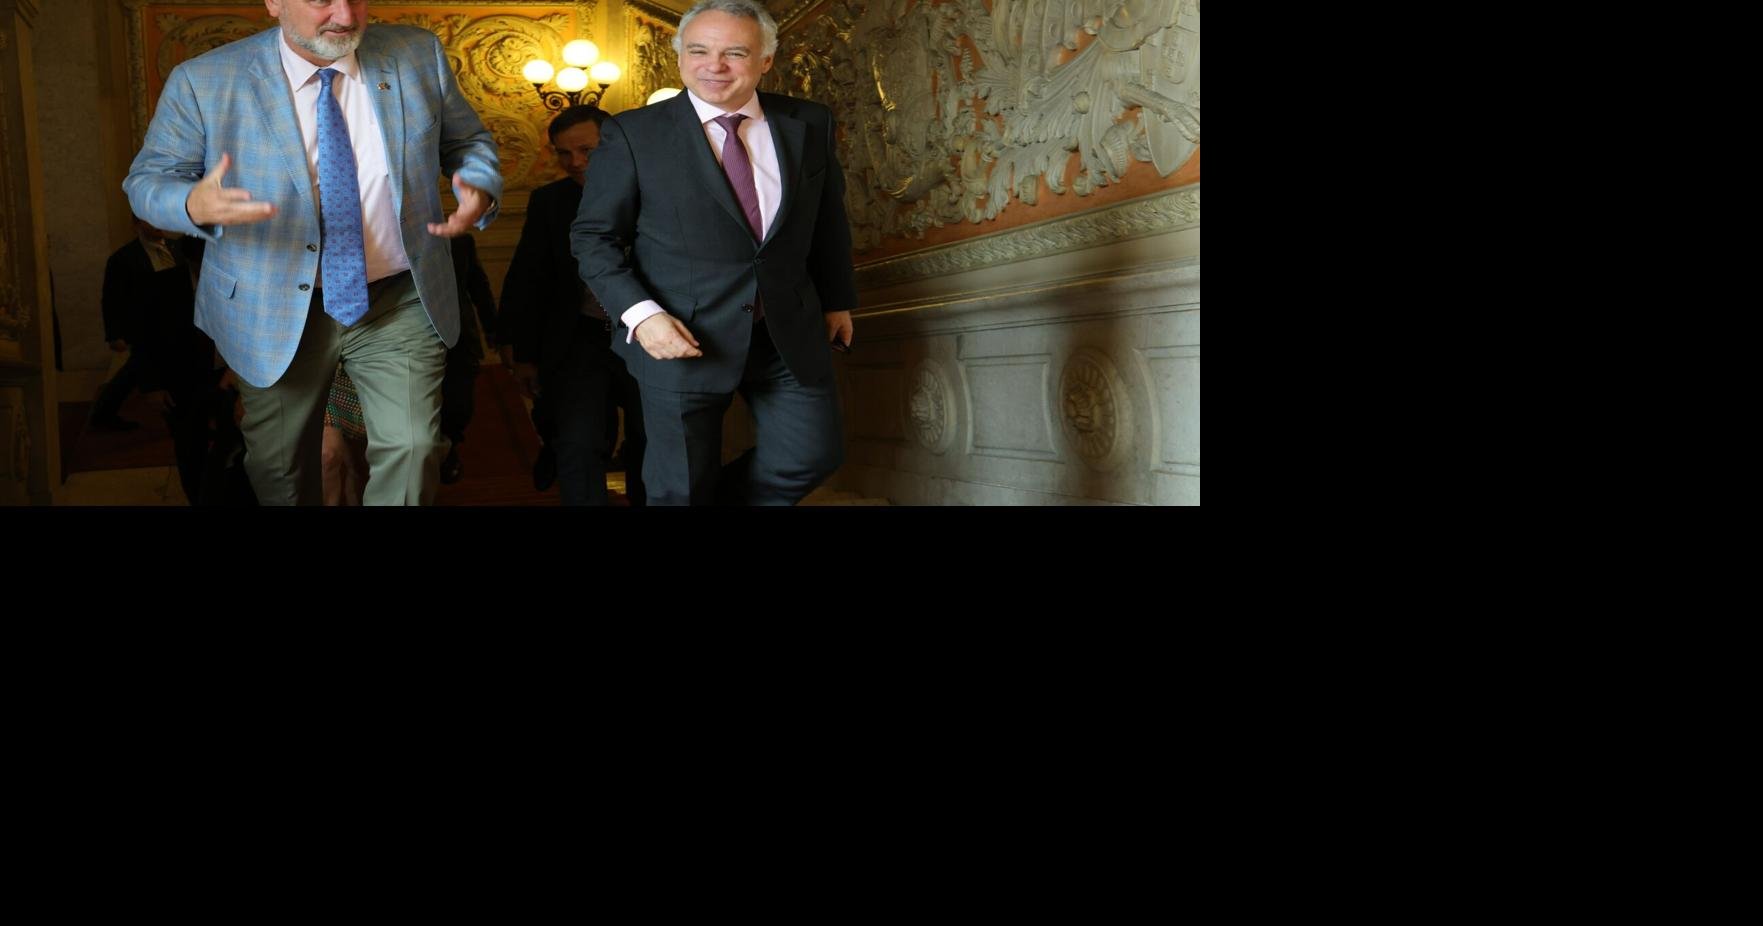 Governador de Indiana, Eric Holcomb, Visita Portugal em Viagem de Desenvolvimento Económico |  política